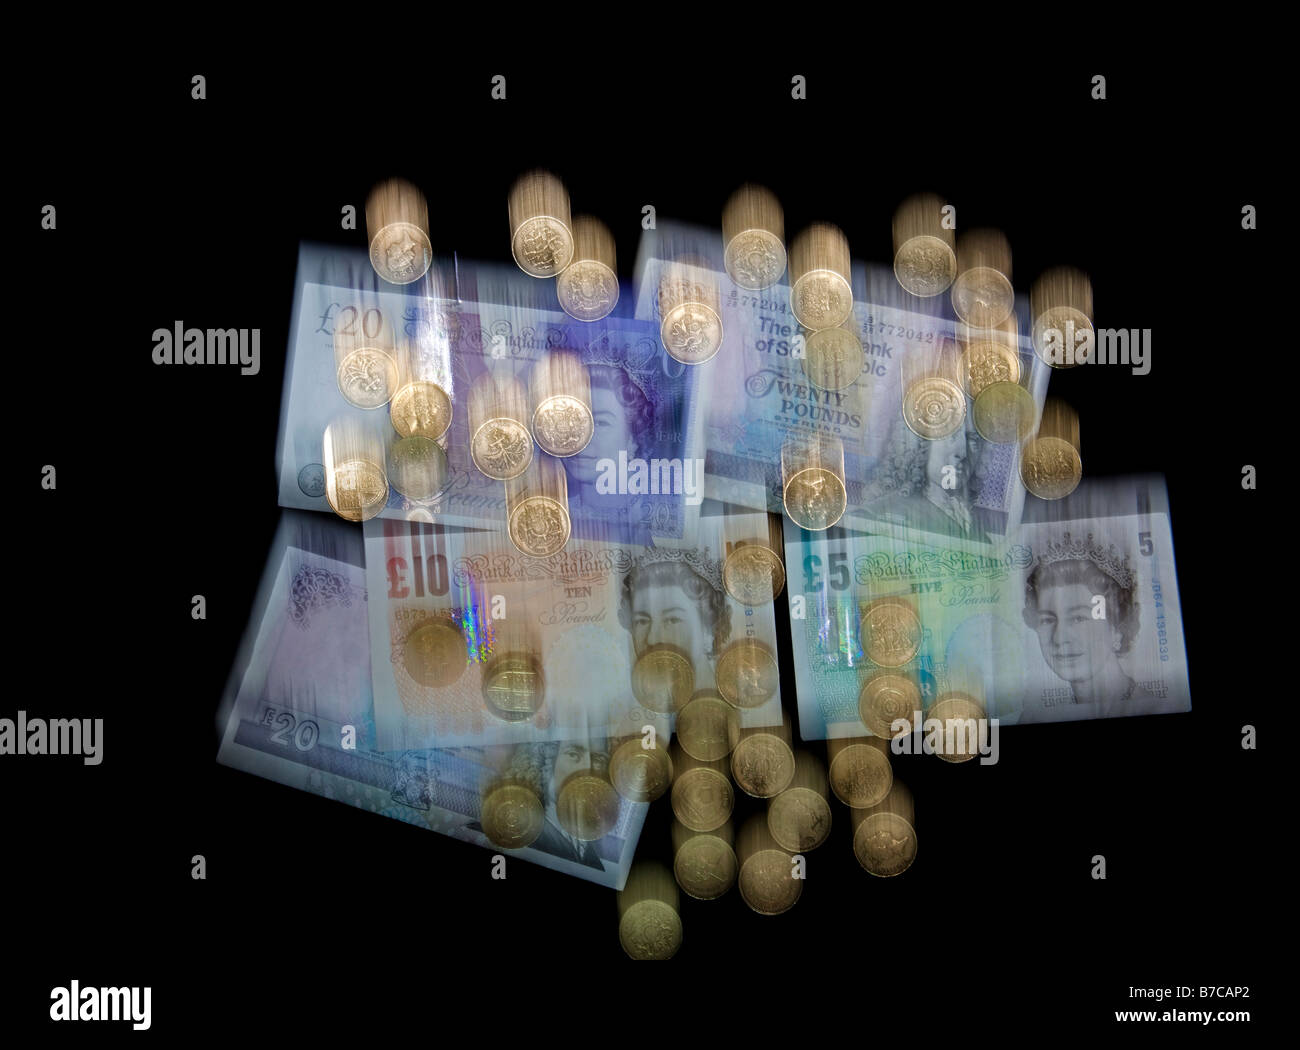 La chute, la monnaie britannique floue billets et pièces livre sterling pour illustrer la chute de livre Banque D'Images